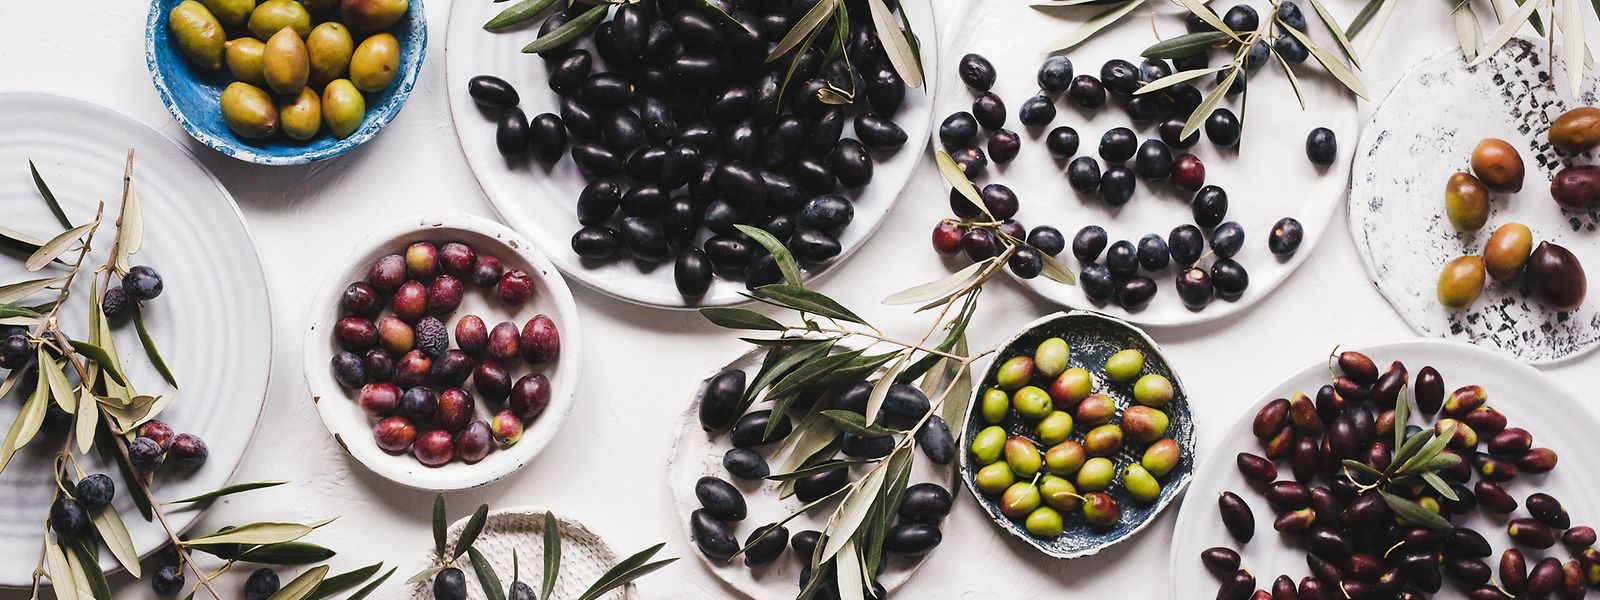 In Oliven sind viele verschiedene Polyphenole enthalten, deren Kombination eine hohe antioxidative Wirkung entfaltet. 